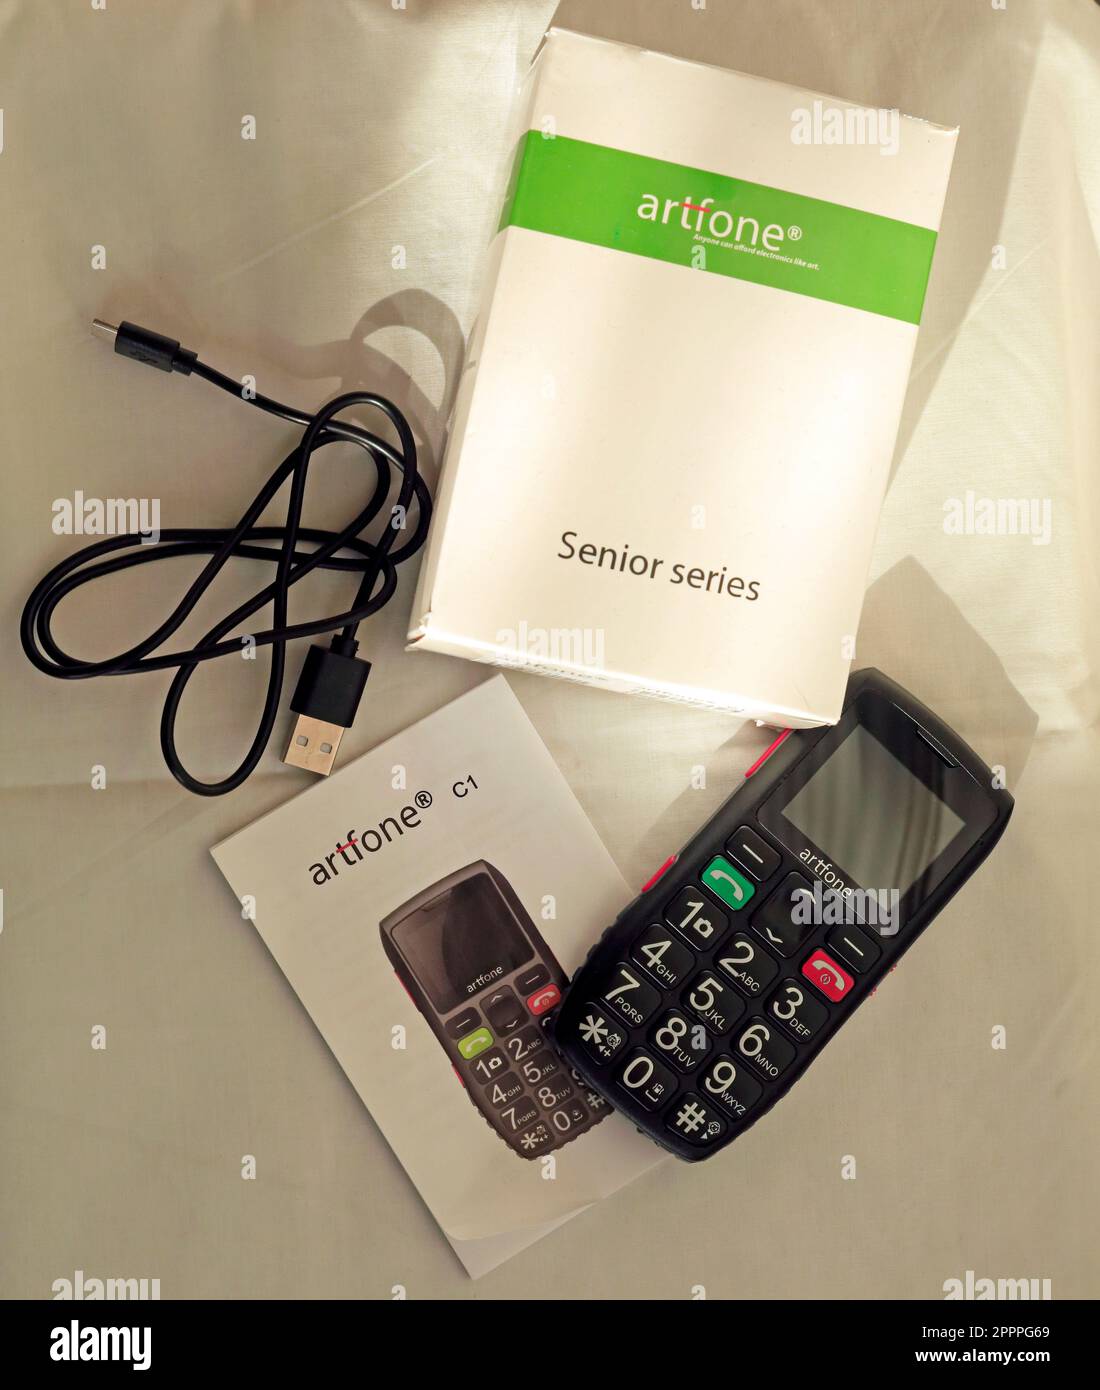 Téléphone portable Artsfone série Senior avec boîtier, câble de chargeur et manuel d'instructions Banque D'Images